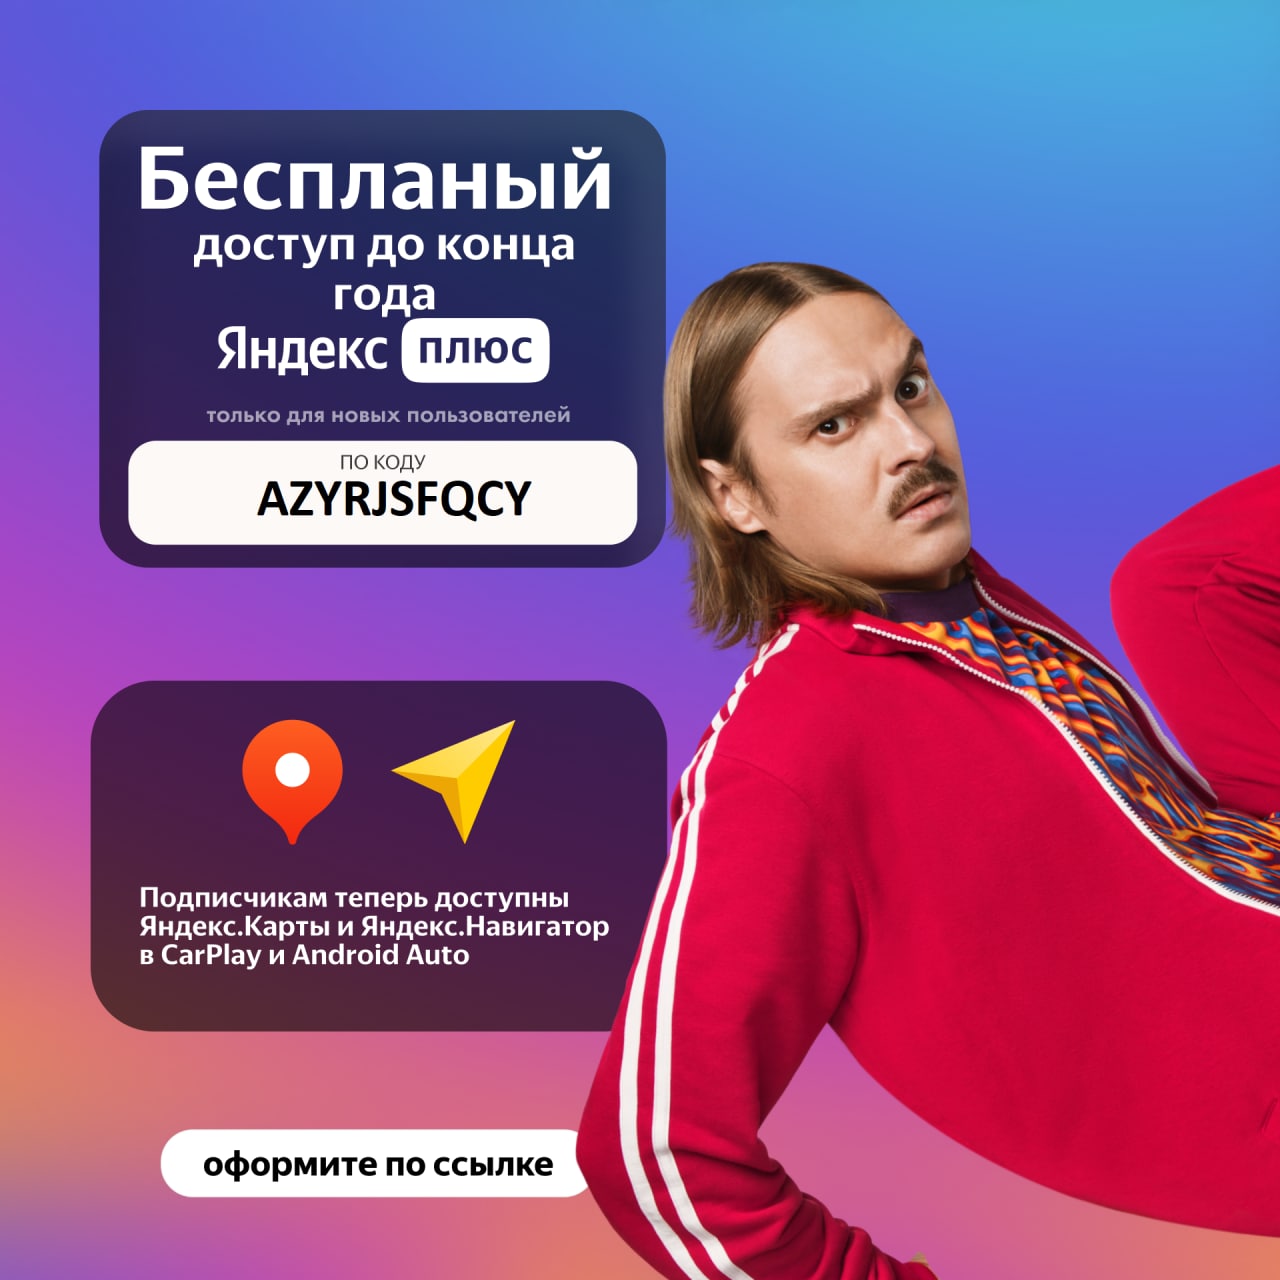 Яндекс плюс телеграмм подписка фото 21